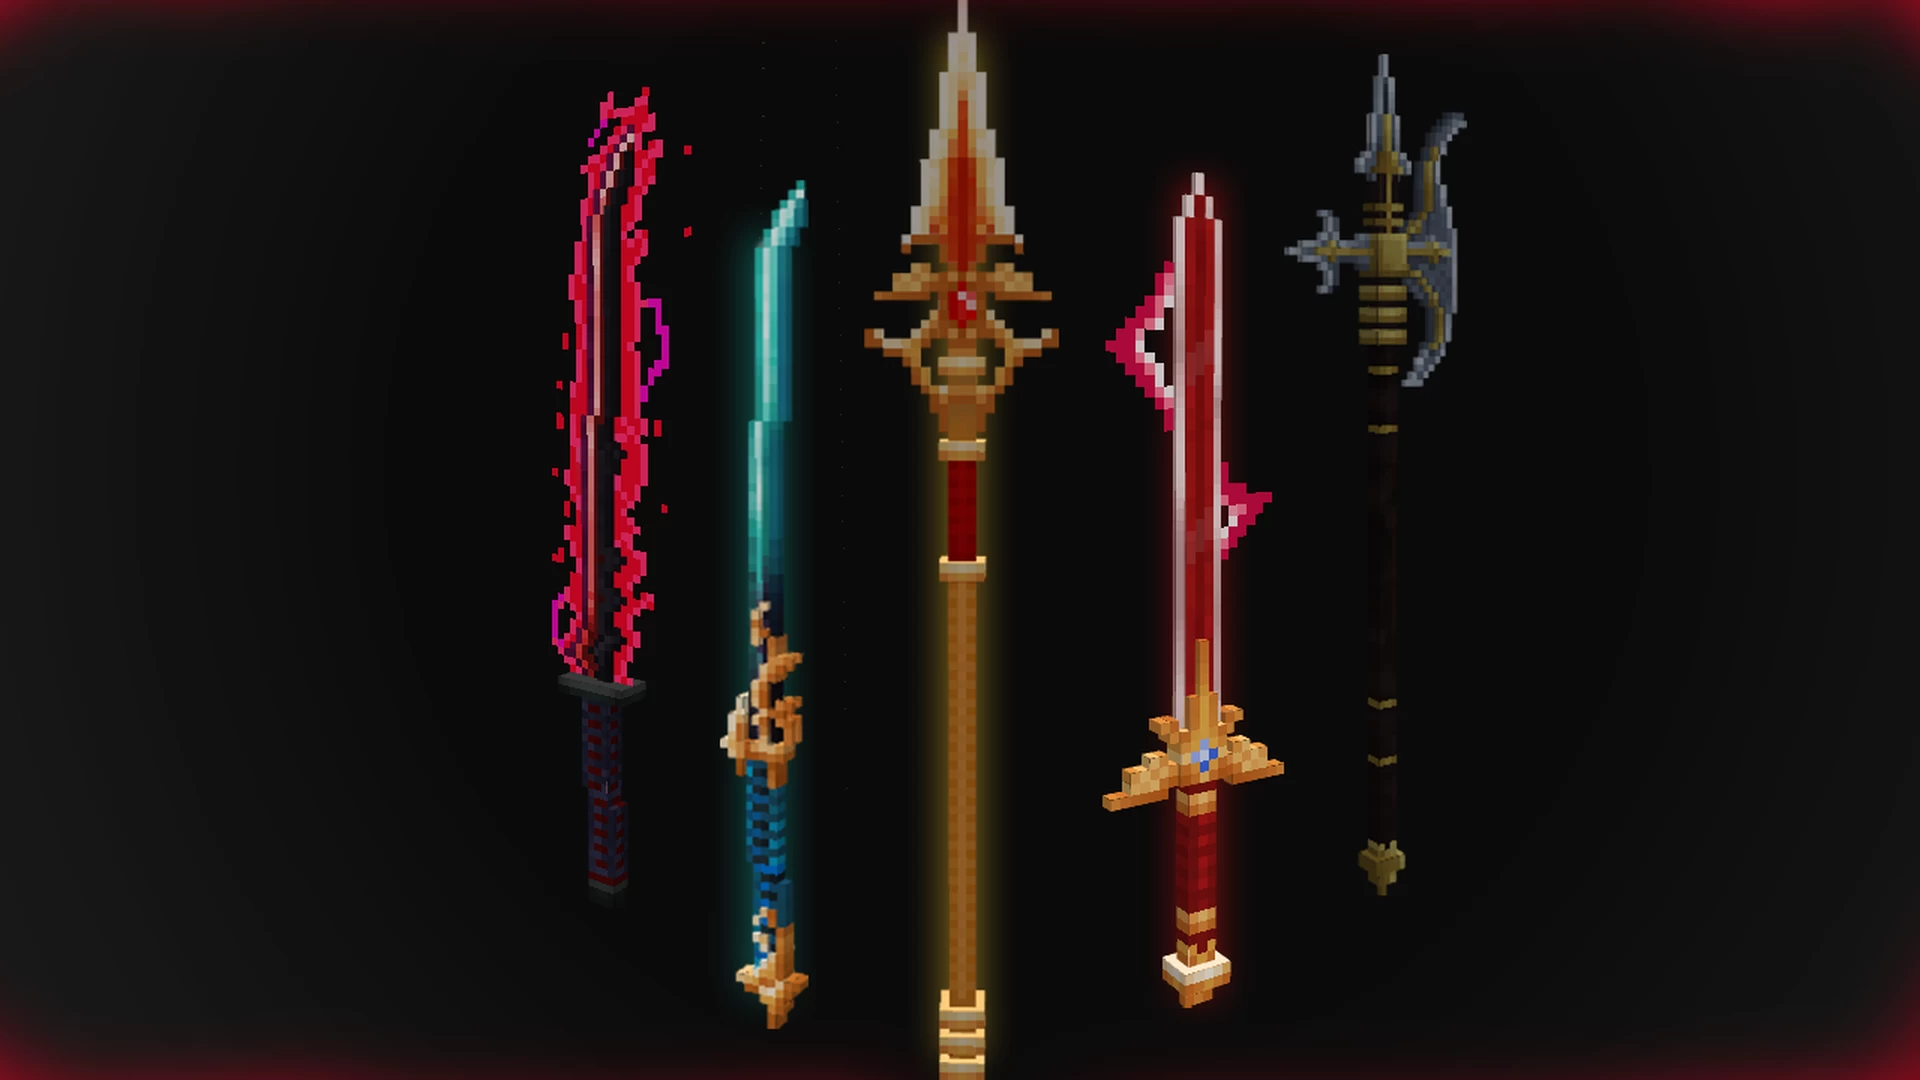 Steam Workshop::Minecraft Swords